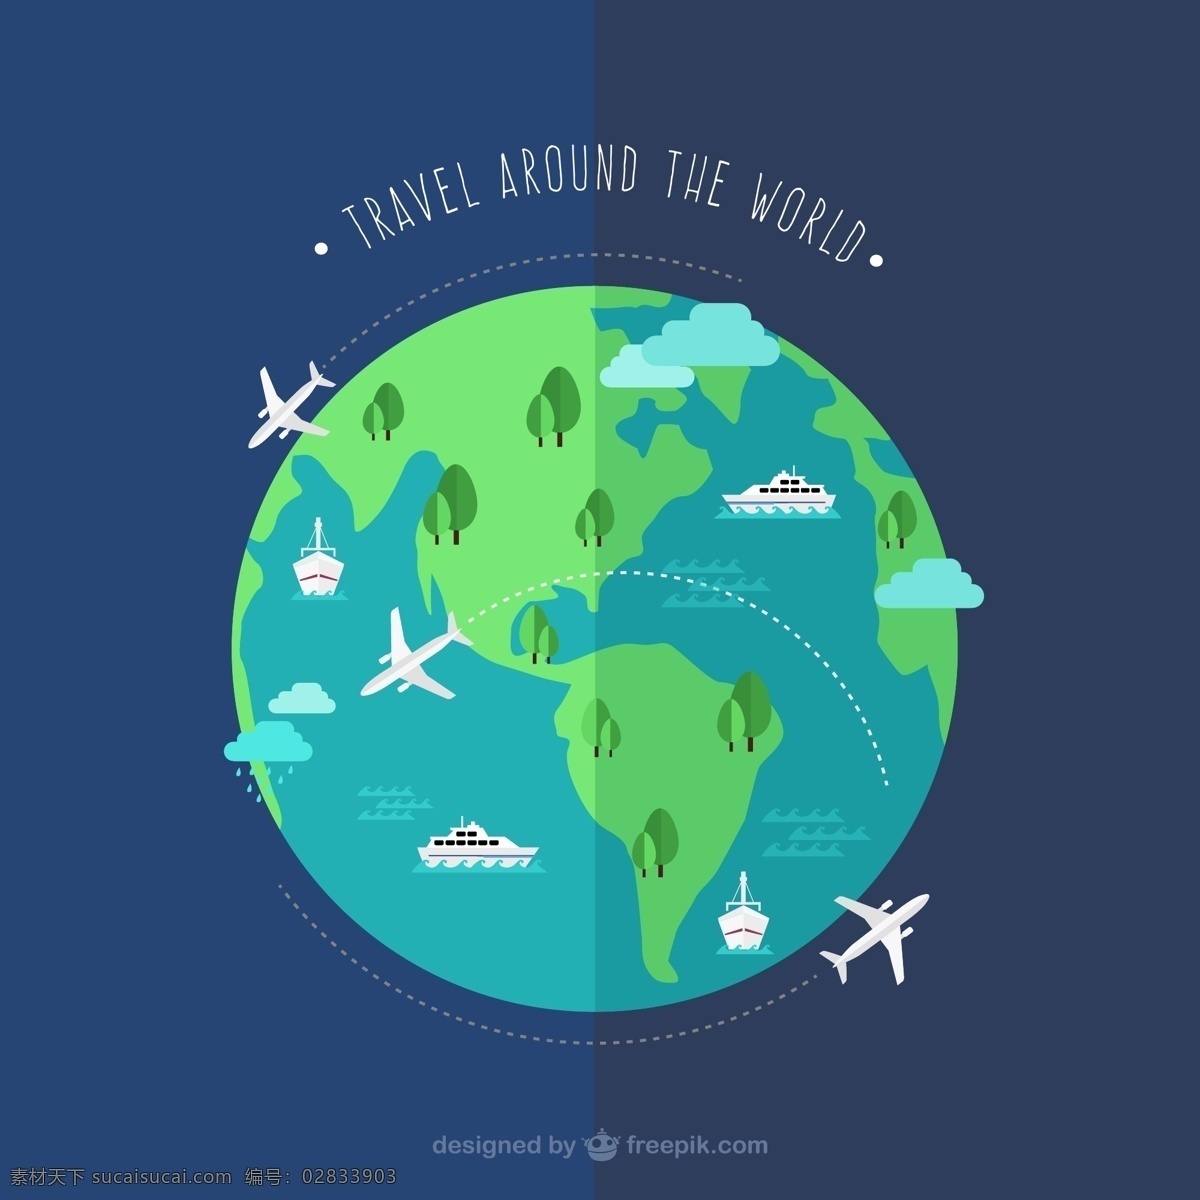 创意 环球 旅行 地球 插画 矢量图 环球旅行 矢量趣多多 标志图标 其他图标